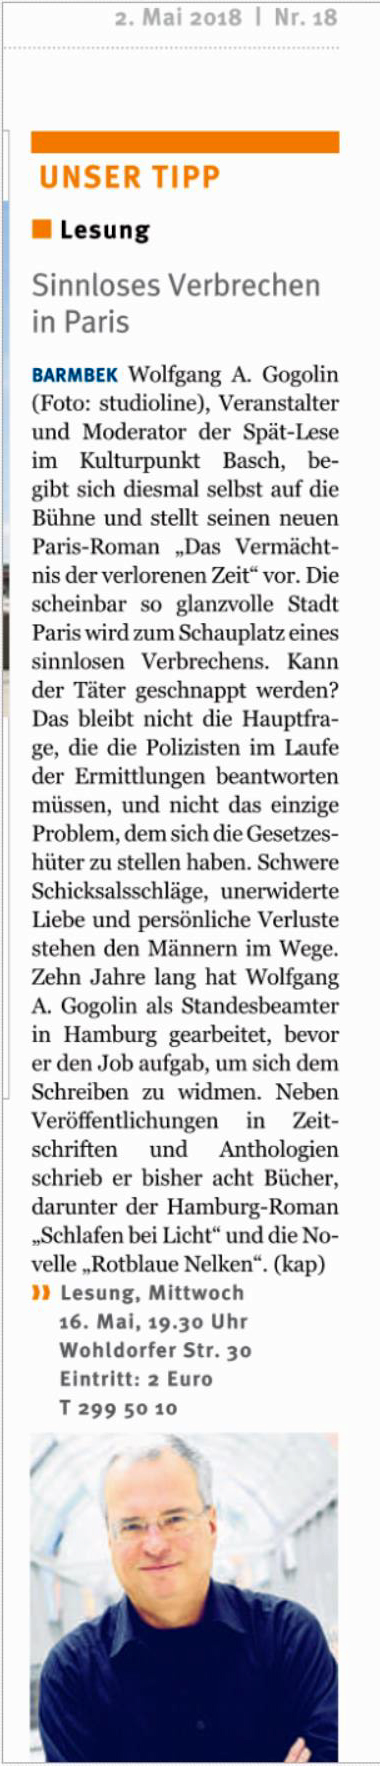 Das Vermchtnis der verlorenen Zeit/Lesungsankndigung im Hamburger Wochenblatt vom 2. Mai 2018